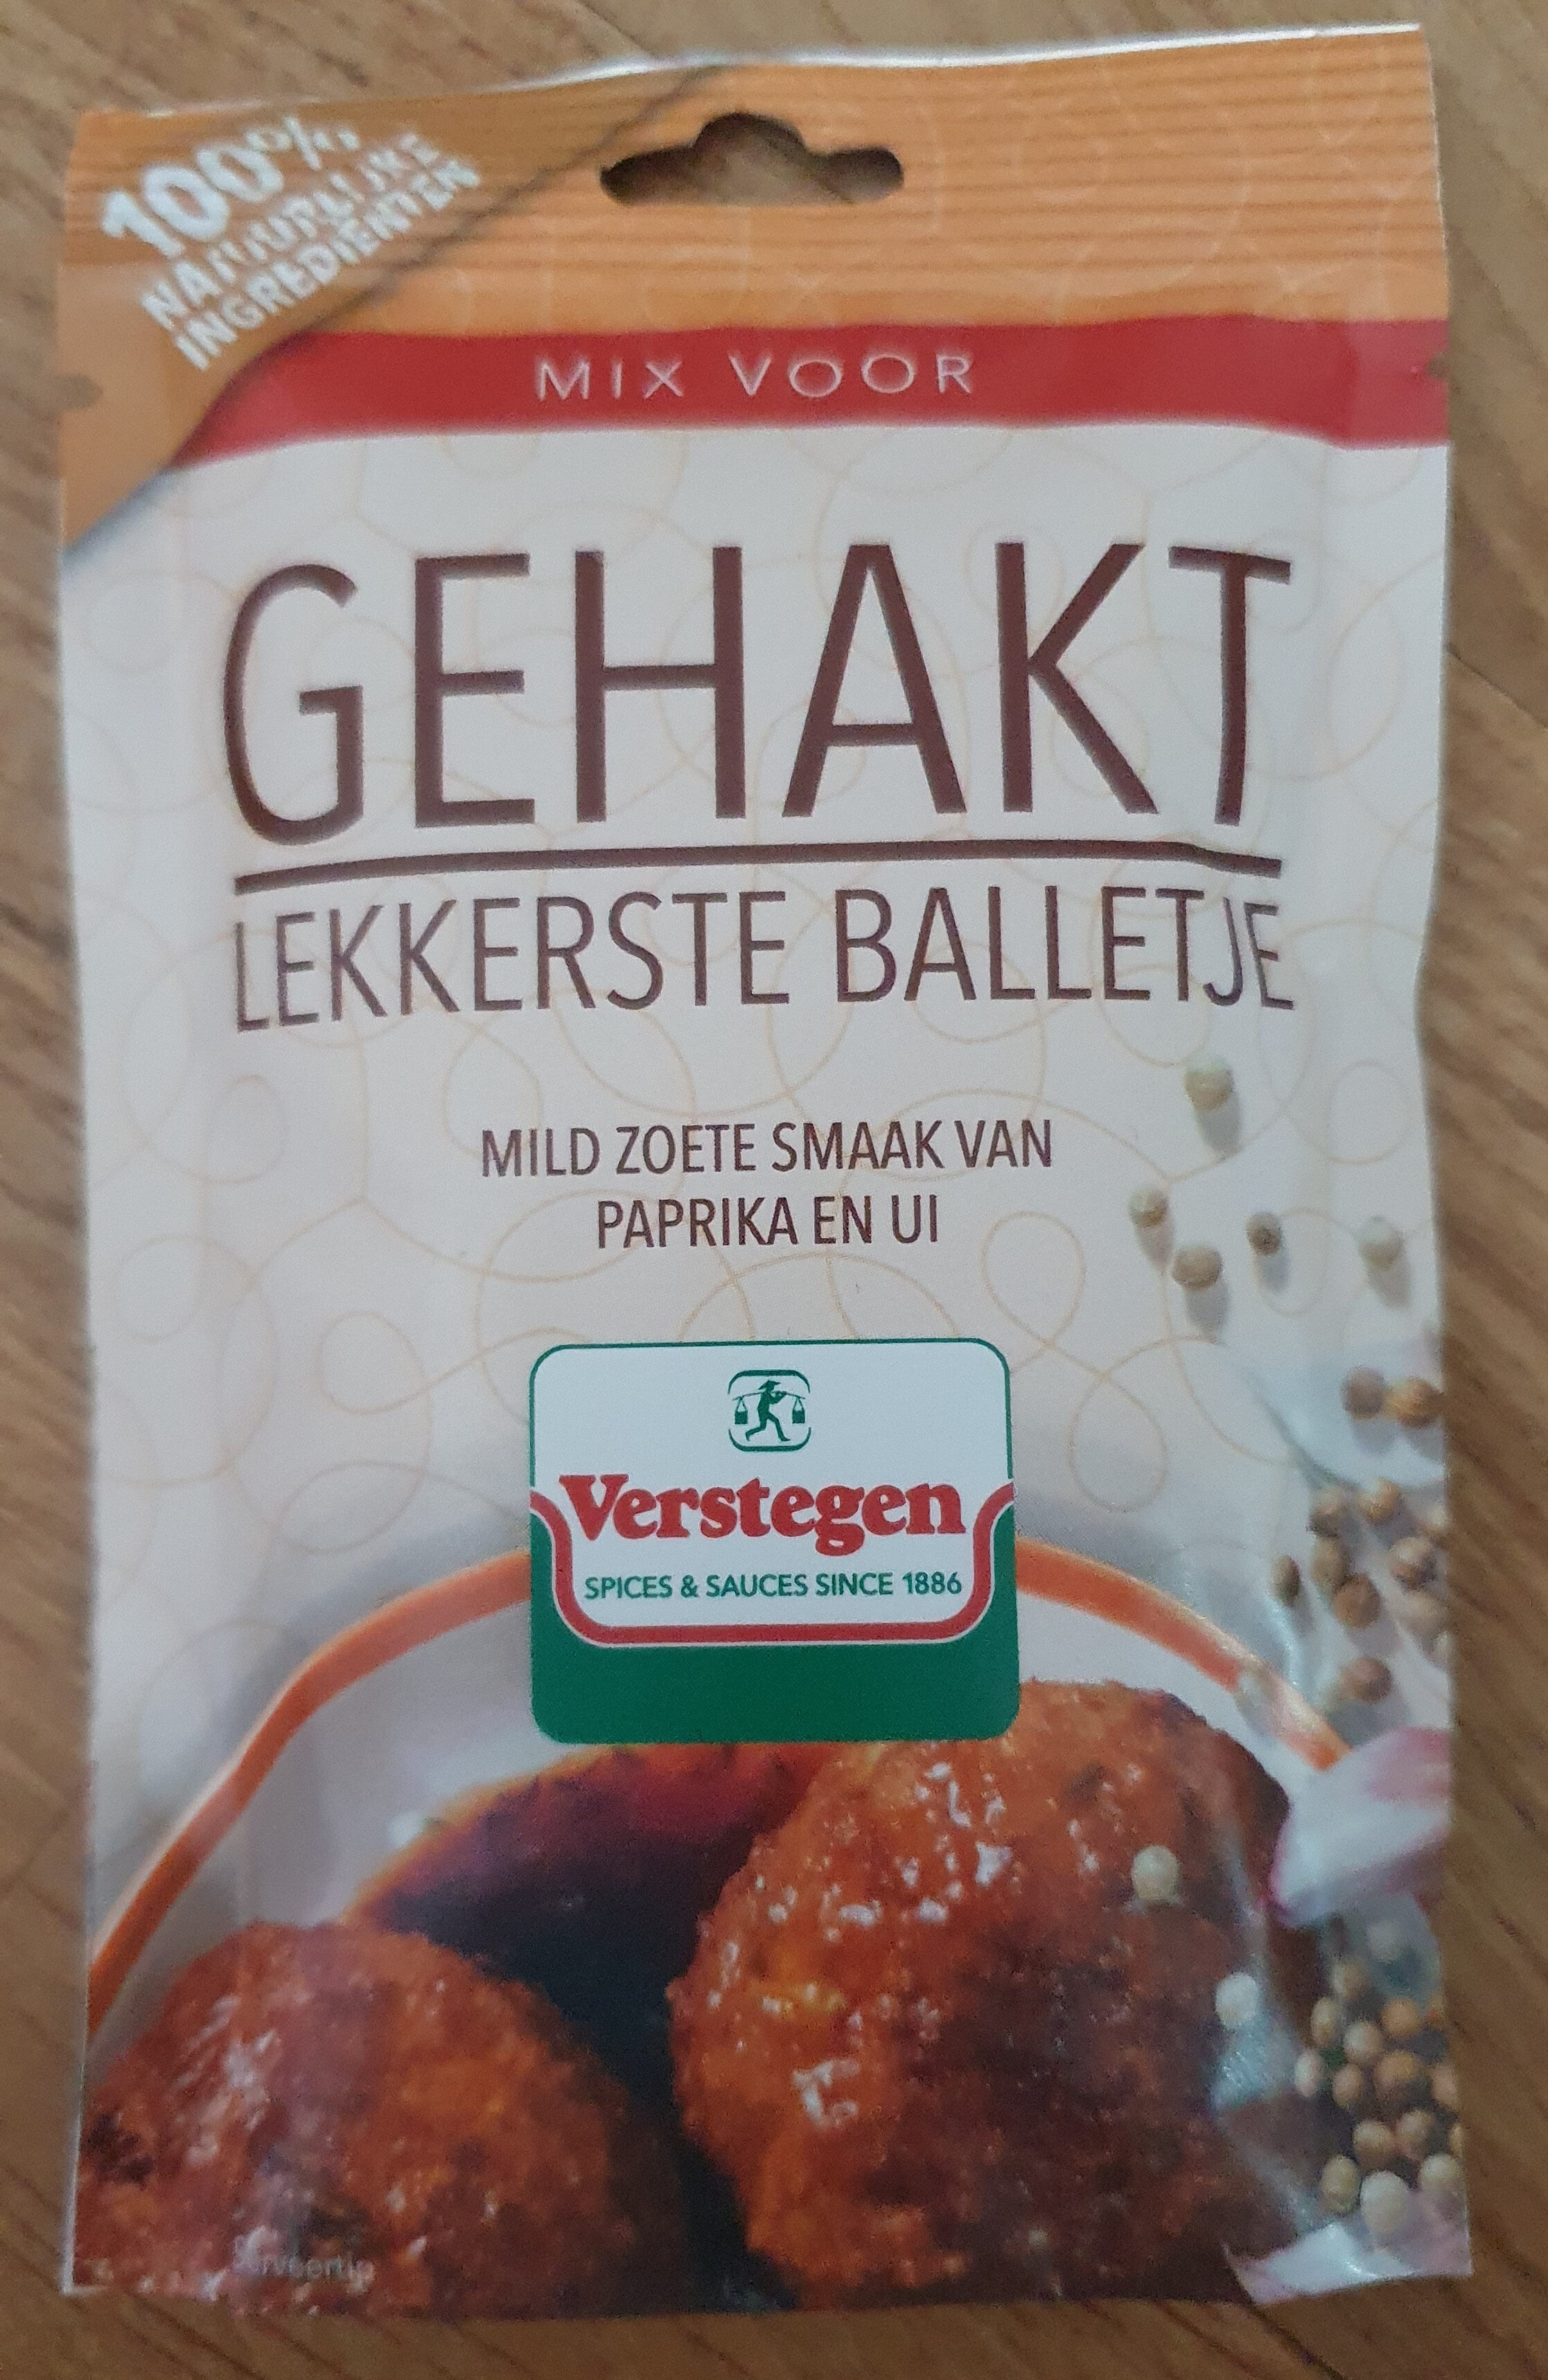 Mix voor Gehakt - Product - nl